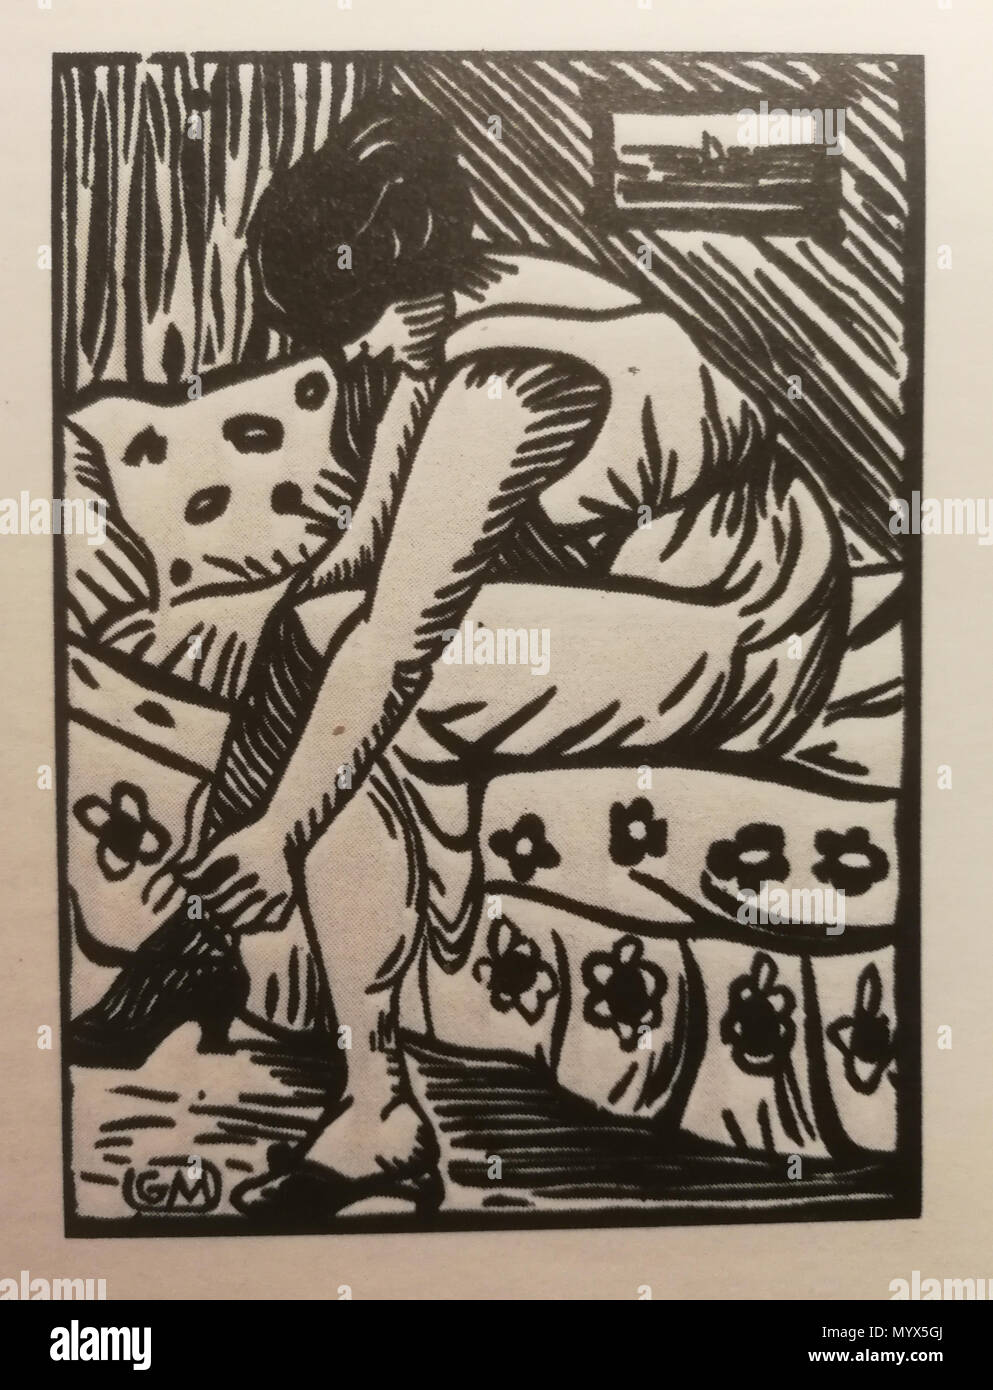 Anglais : Femme tirant ses bas, gravure sur bois, à partir de la Galerie  Barbery (Paris) . Années 1920. Gaspard Maillol (1880-1946) 39  Gaspard-Maillol Femme tirant ses bas Photo Stock - Alamy